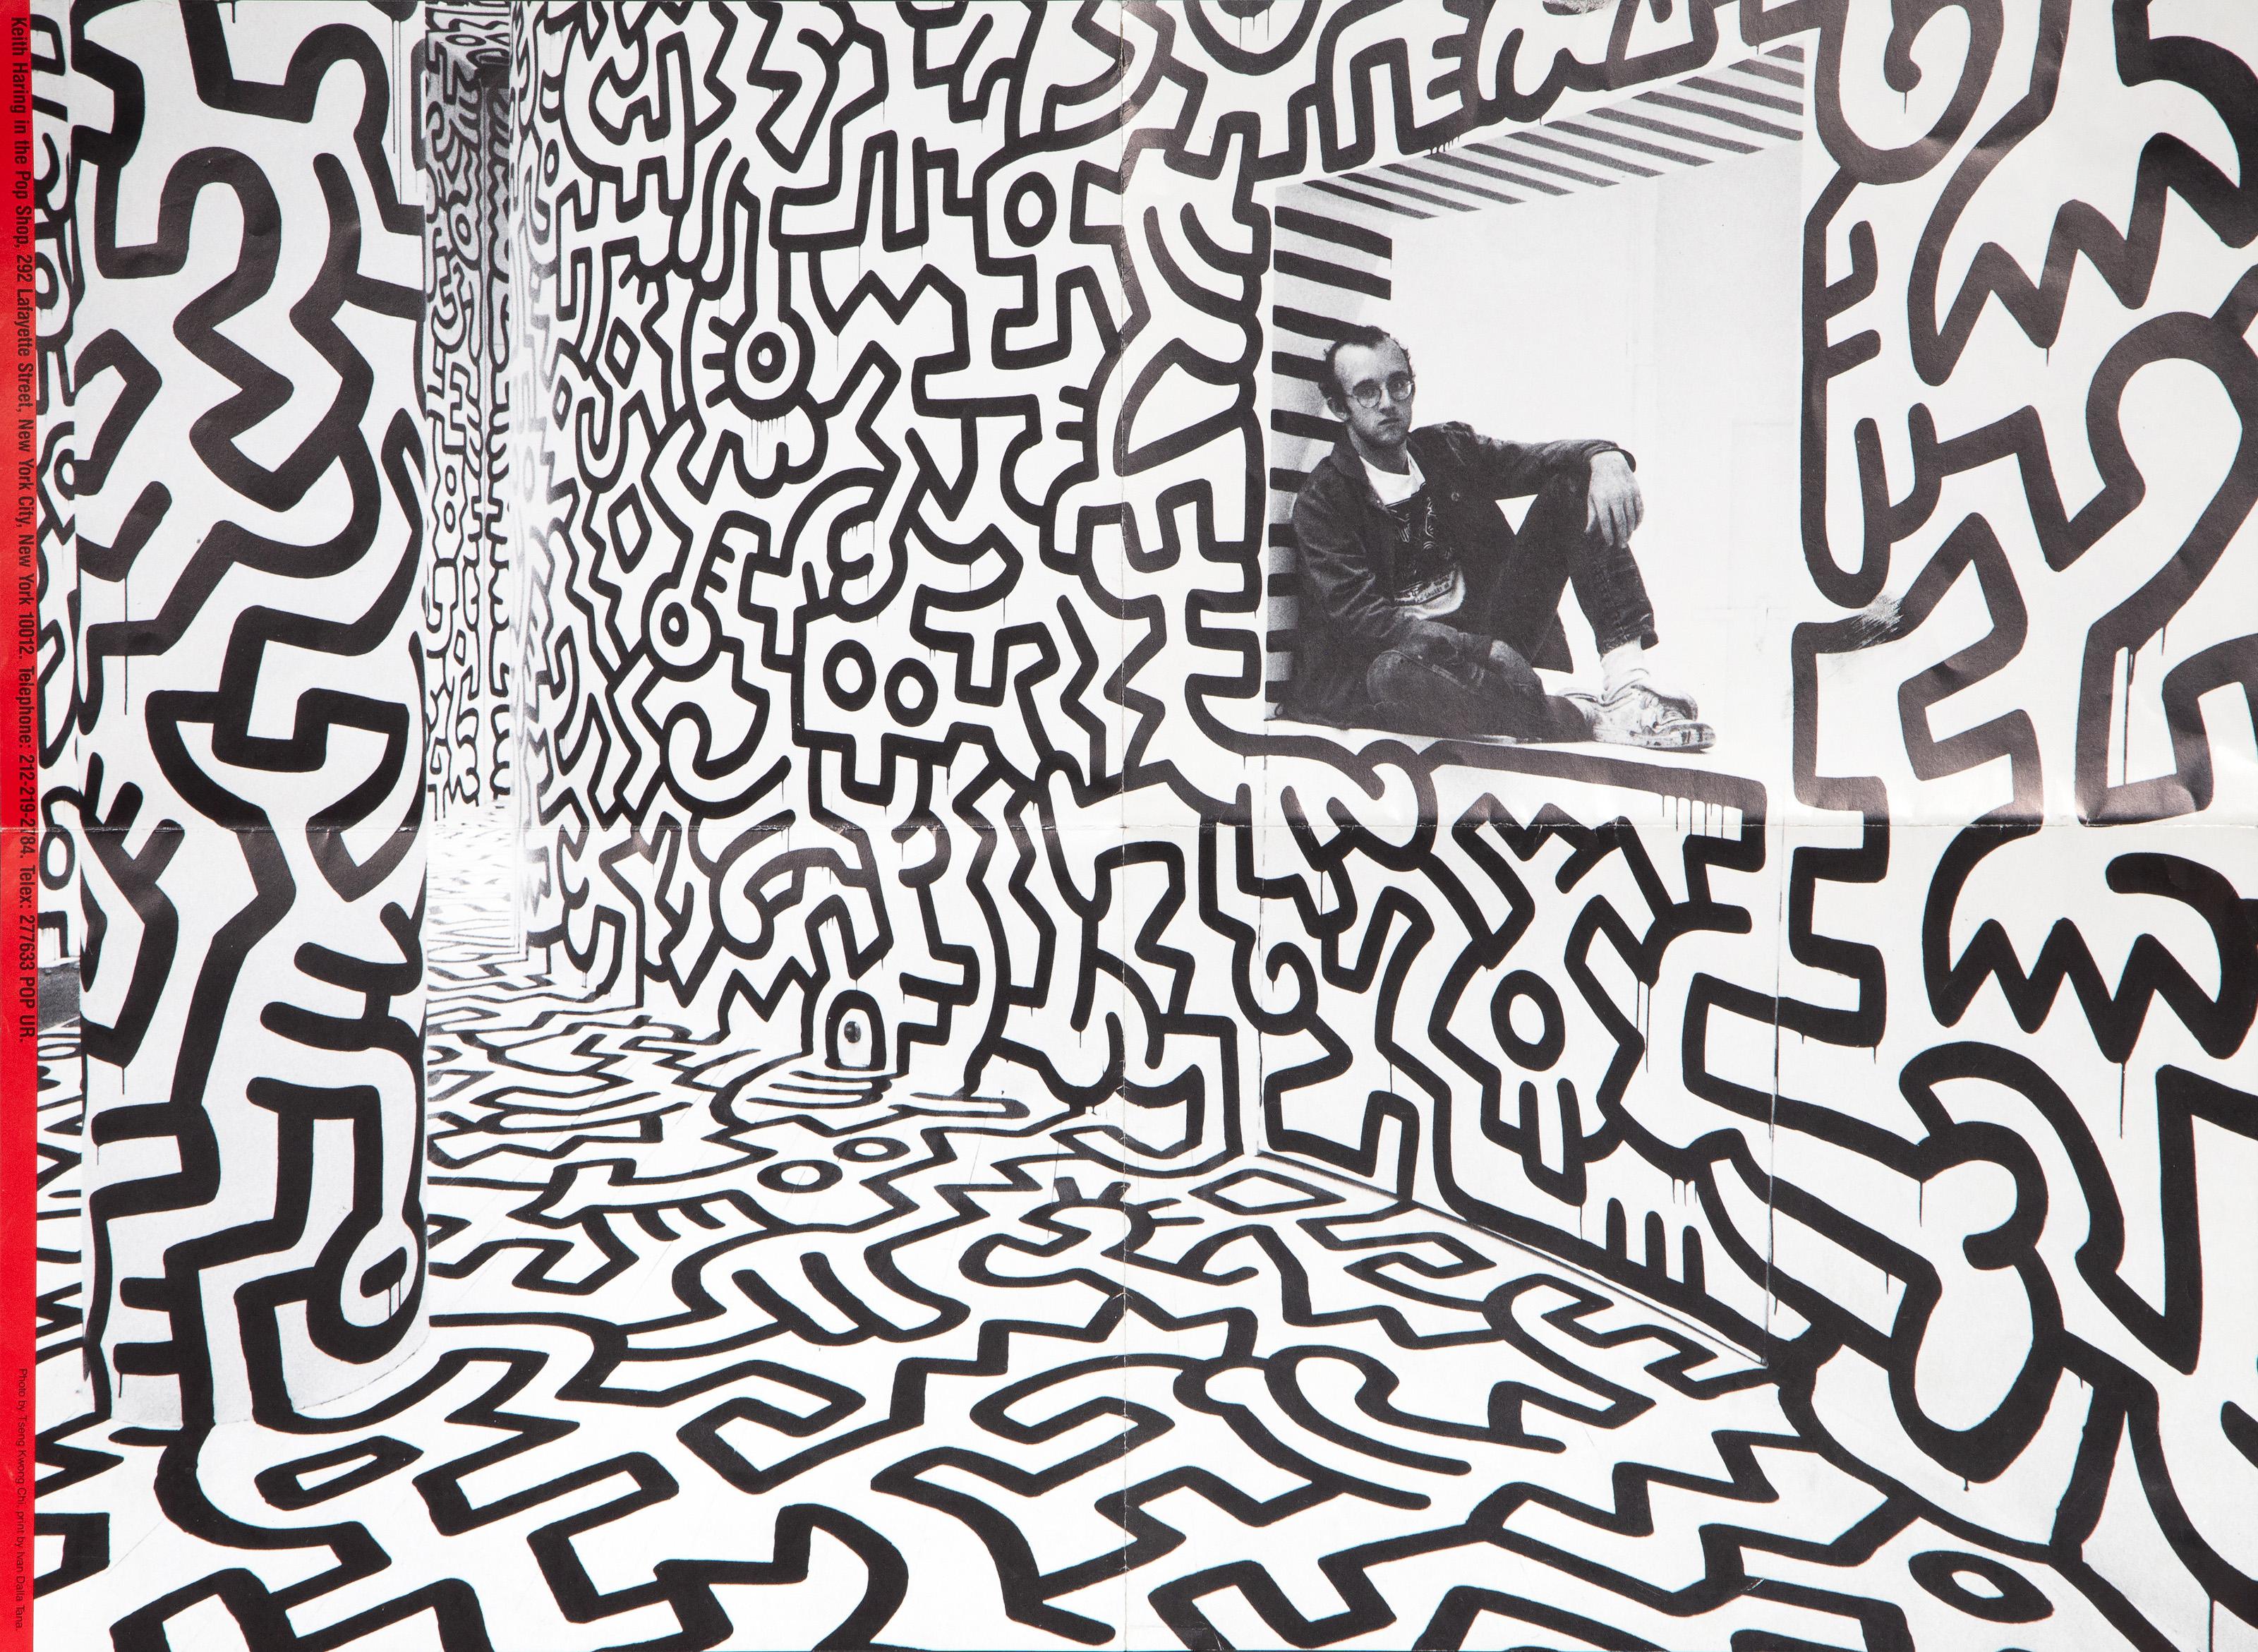 Cette affiche montre l'artiste pop américain Keith Haring assis à la caisse de son pop up shop, un espace entièrement recouvert, du plafond au sol, d'illustrations au trait noir dans le style de Haring. Au verso de cette affiche figurent des images